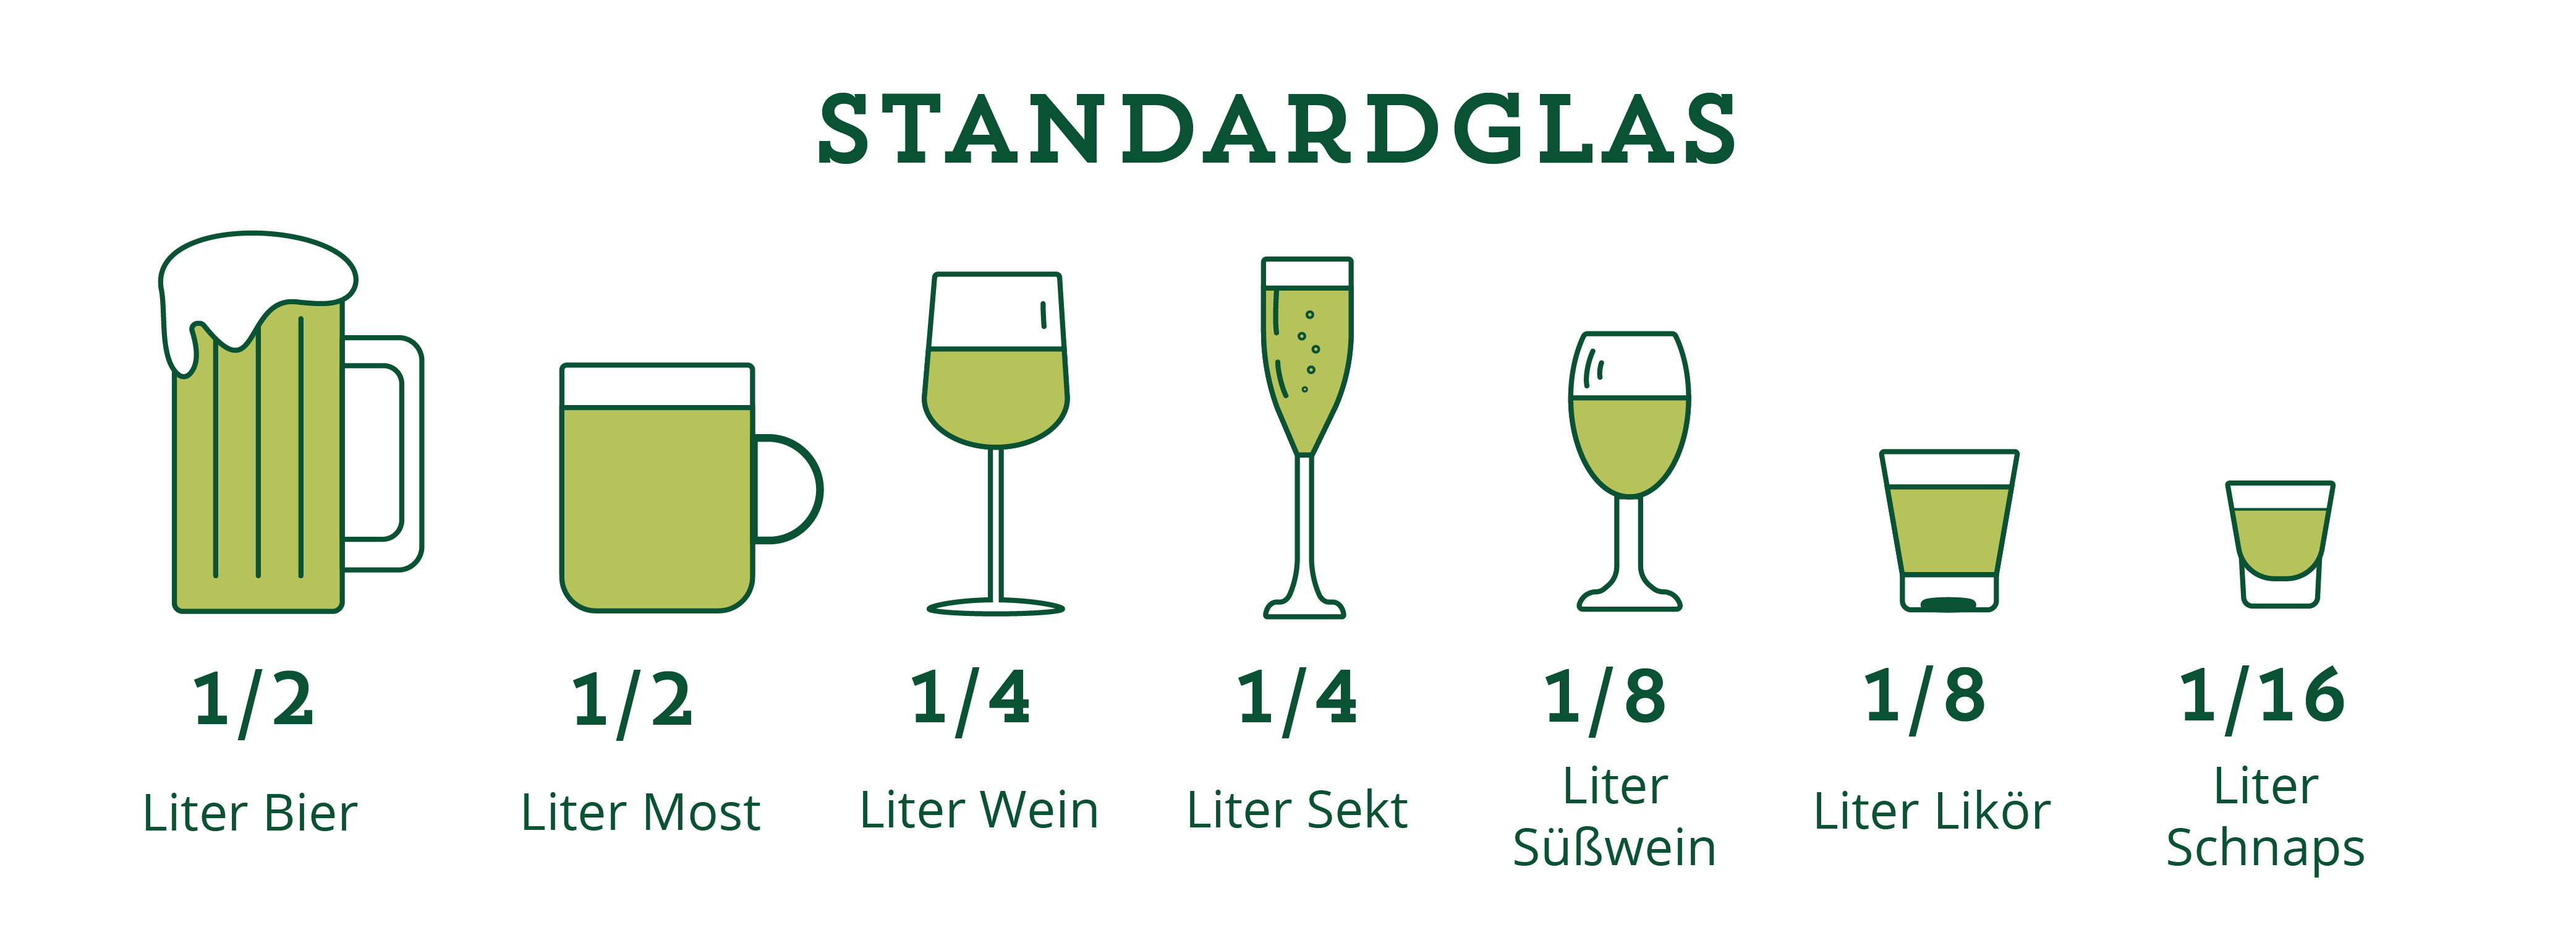 Die Standardglas-Varianten verschiedener alkoholischer Getränke. Für Bier ist es beispielsweise ein halber Liter, für Wein ein viertel Liter.